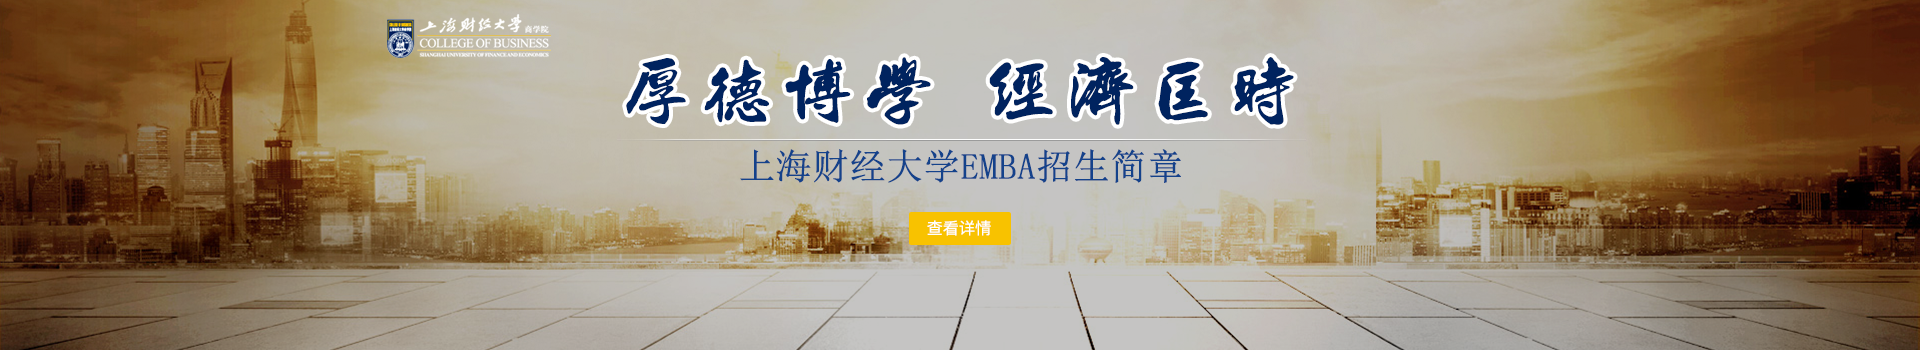 上海财经大学商学院高级工商管理硕士EMBA招生简章